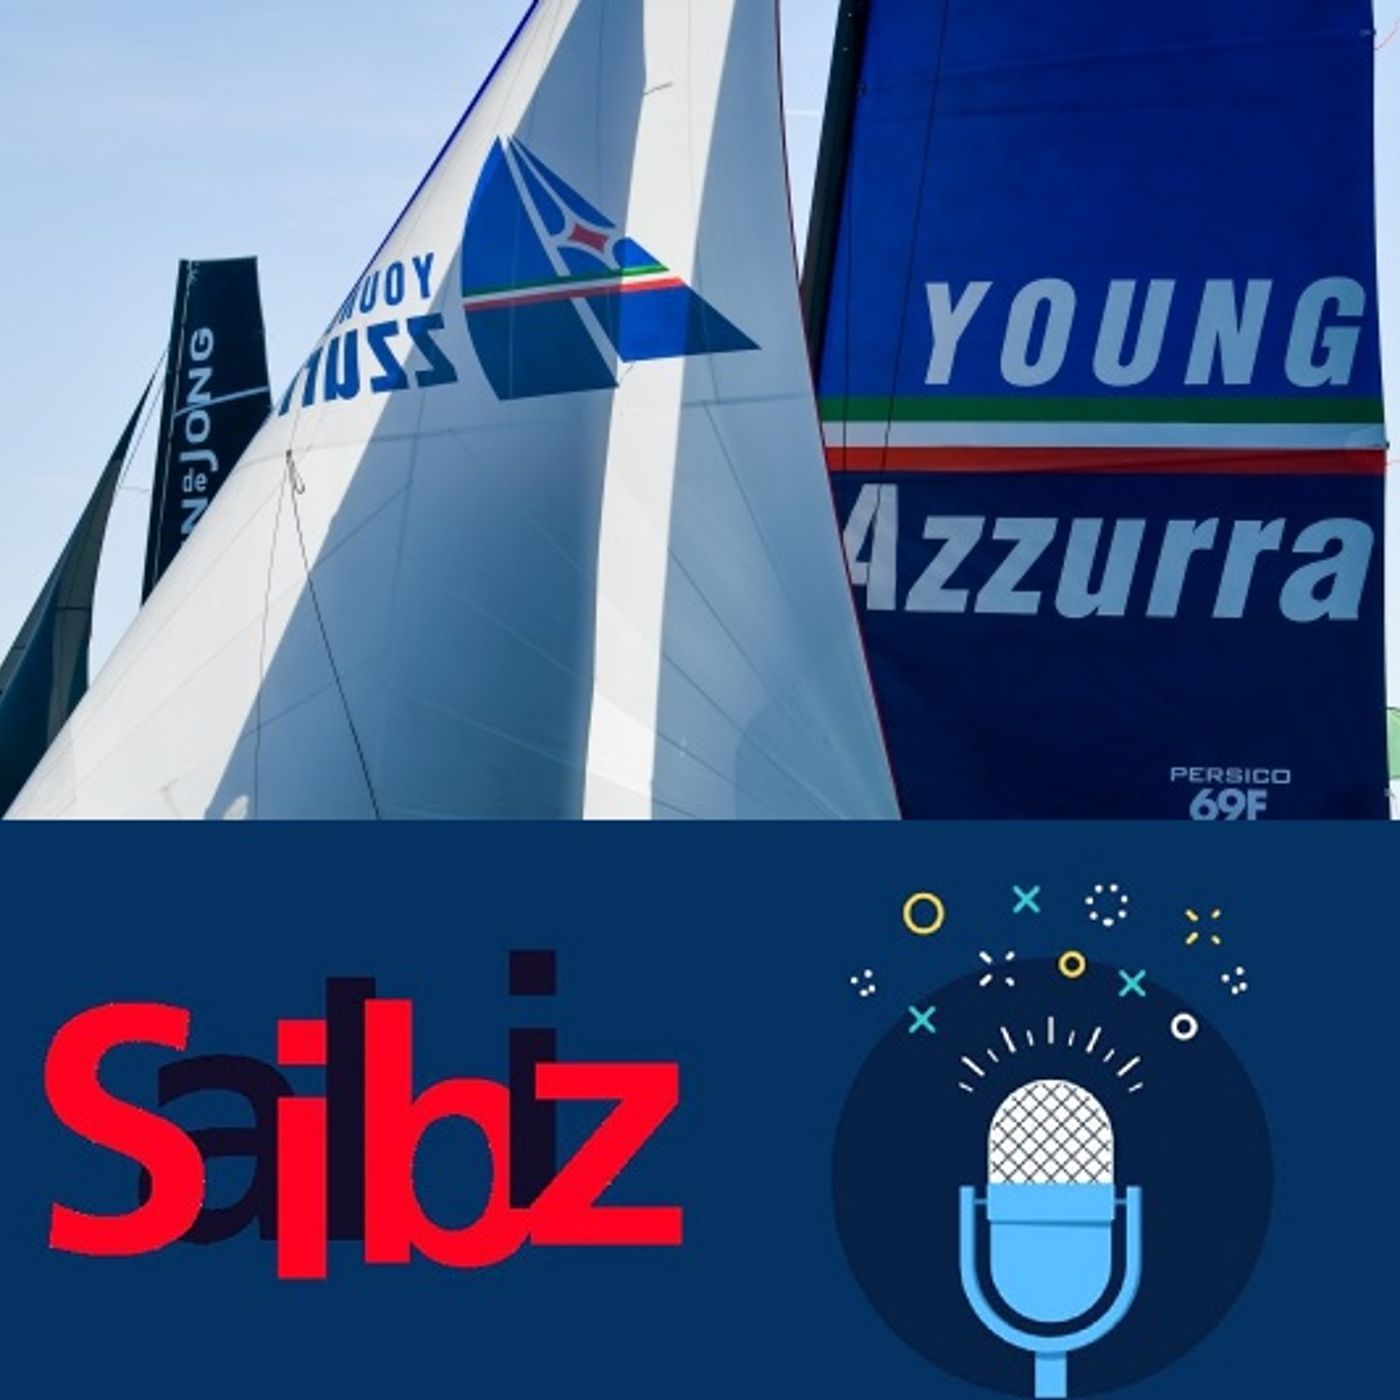 SAILBIZ La Liberty Bitcoin Cup l'obiettivo nel mirino di Young Azzurra